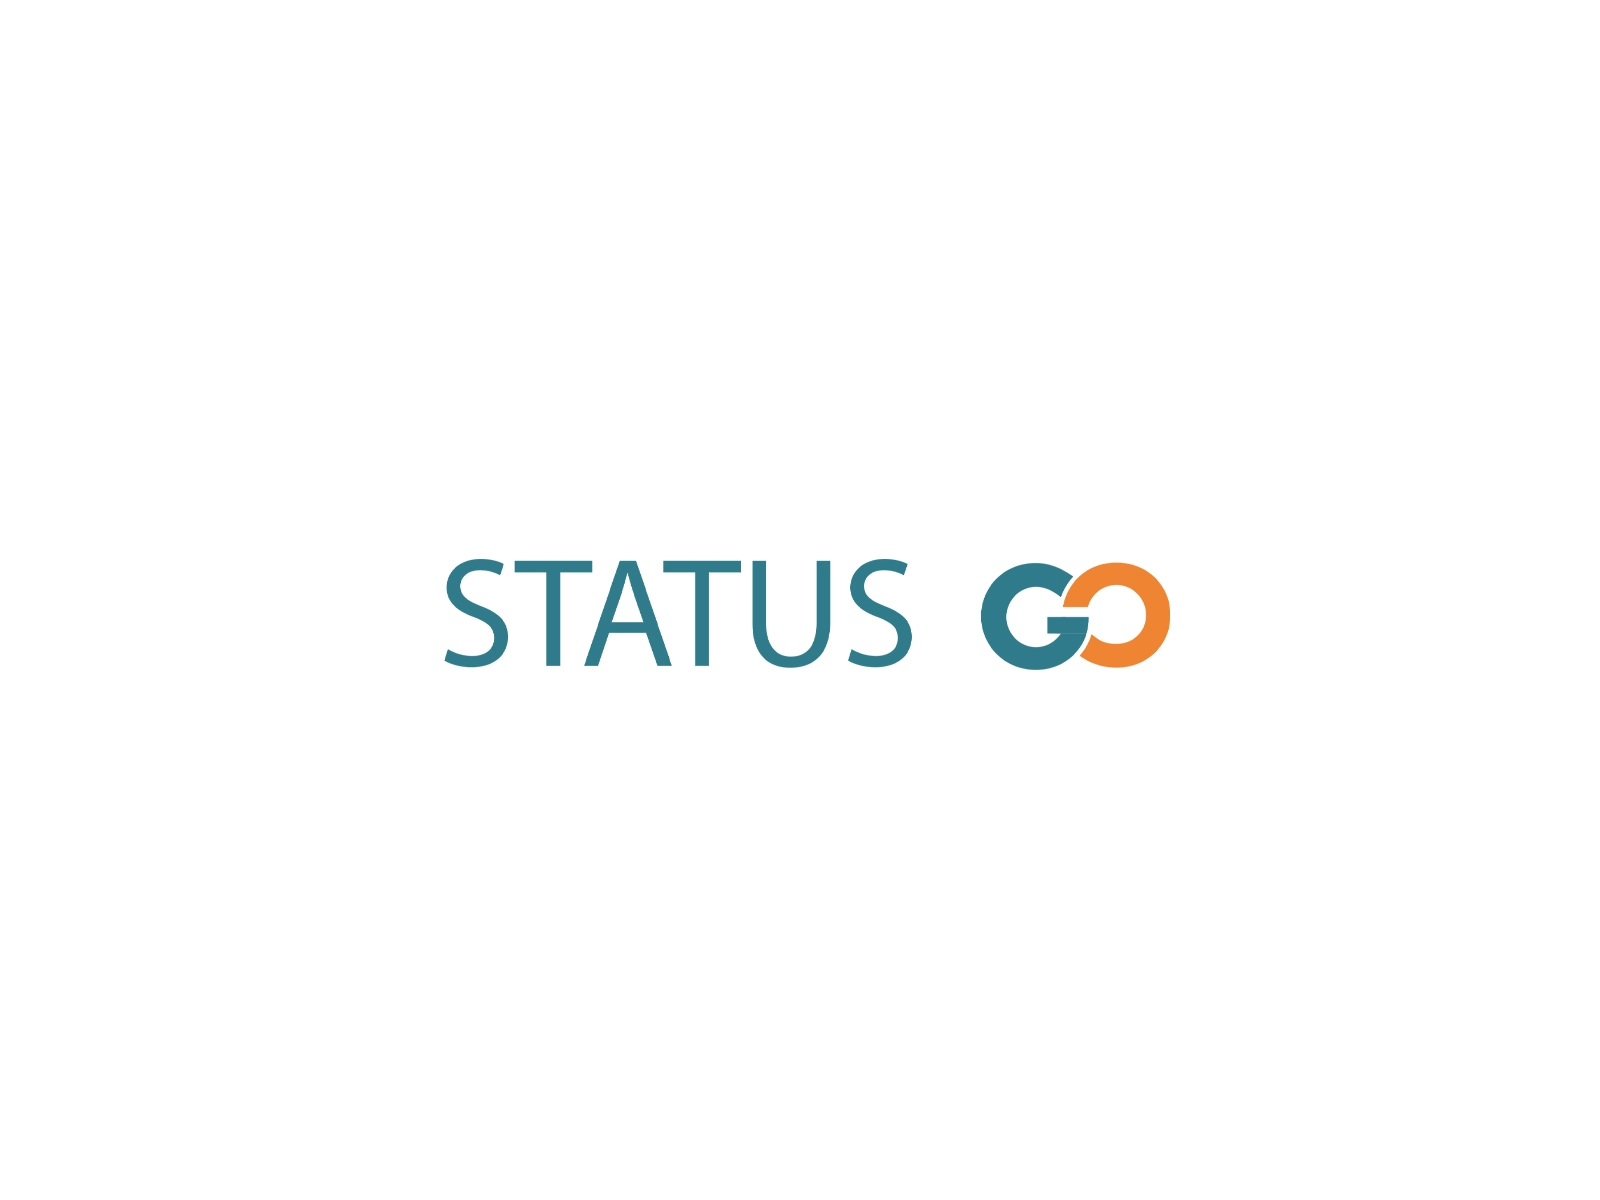 Status go